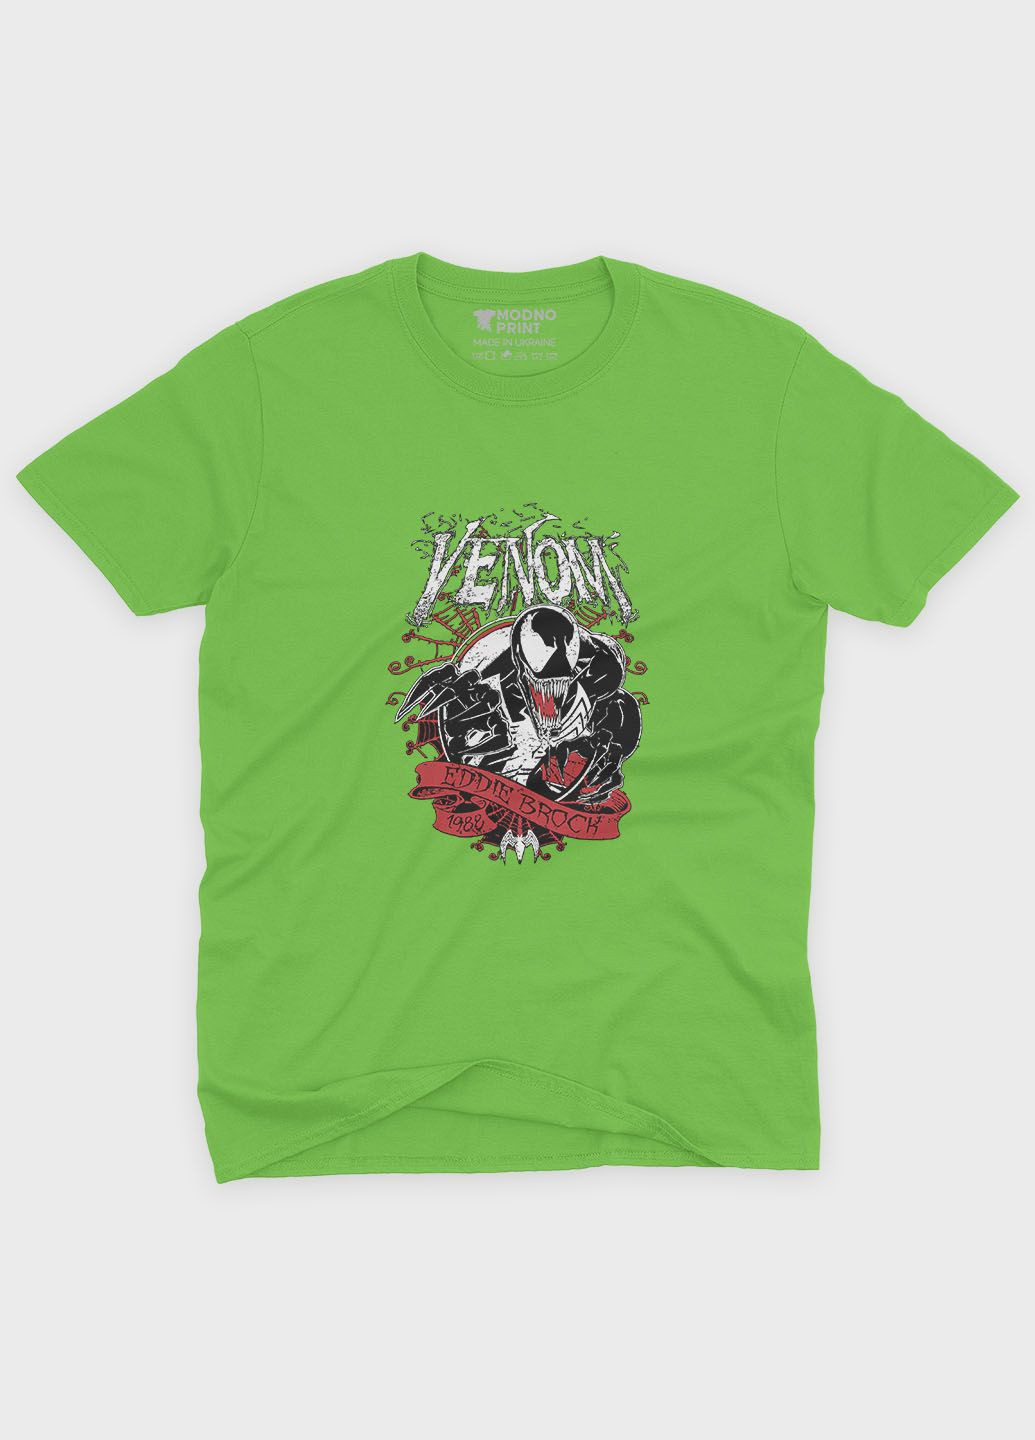 Салатовая демисезонная футболка для мальчика с принтом супервора - веном (ts001-1-kiw-006-013-027-b) Modno